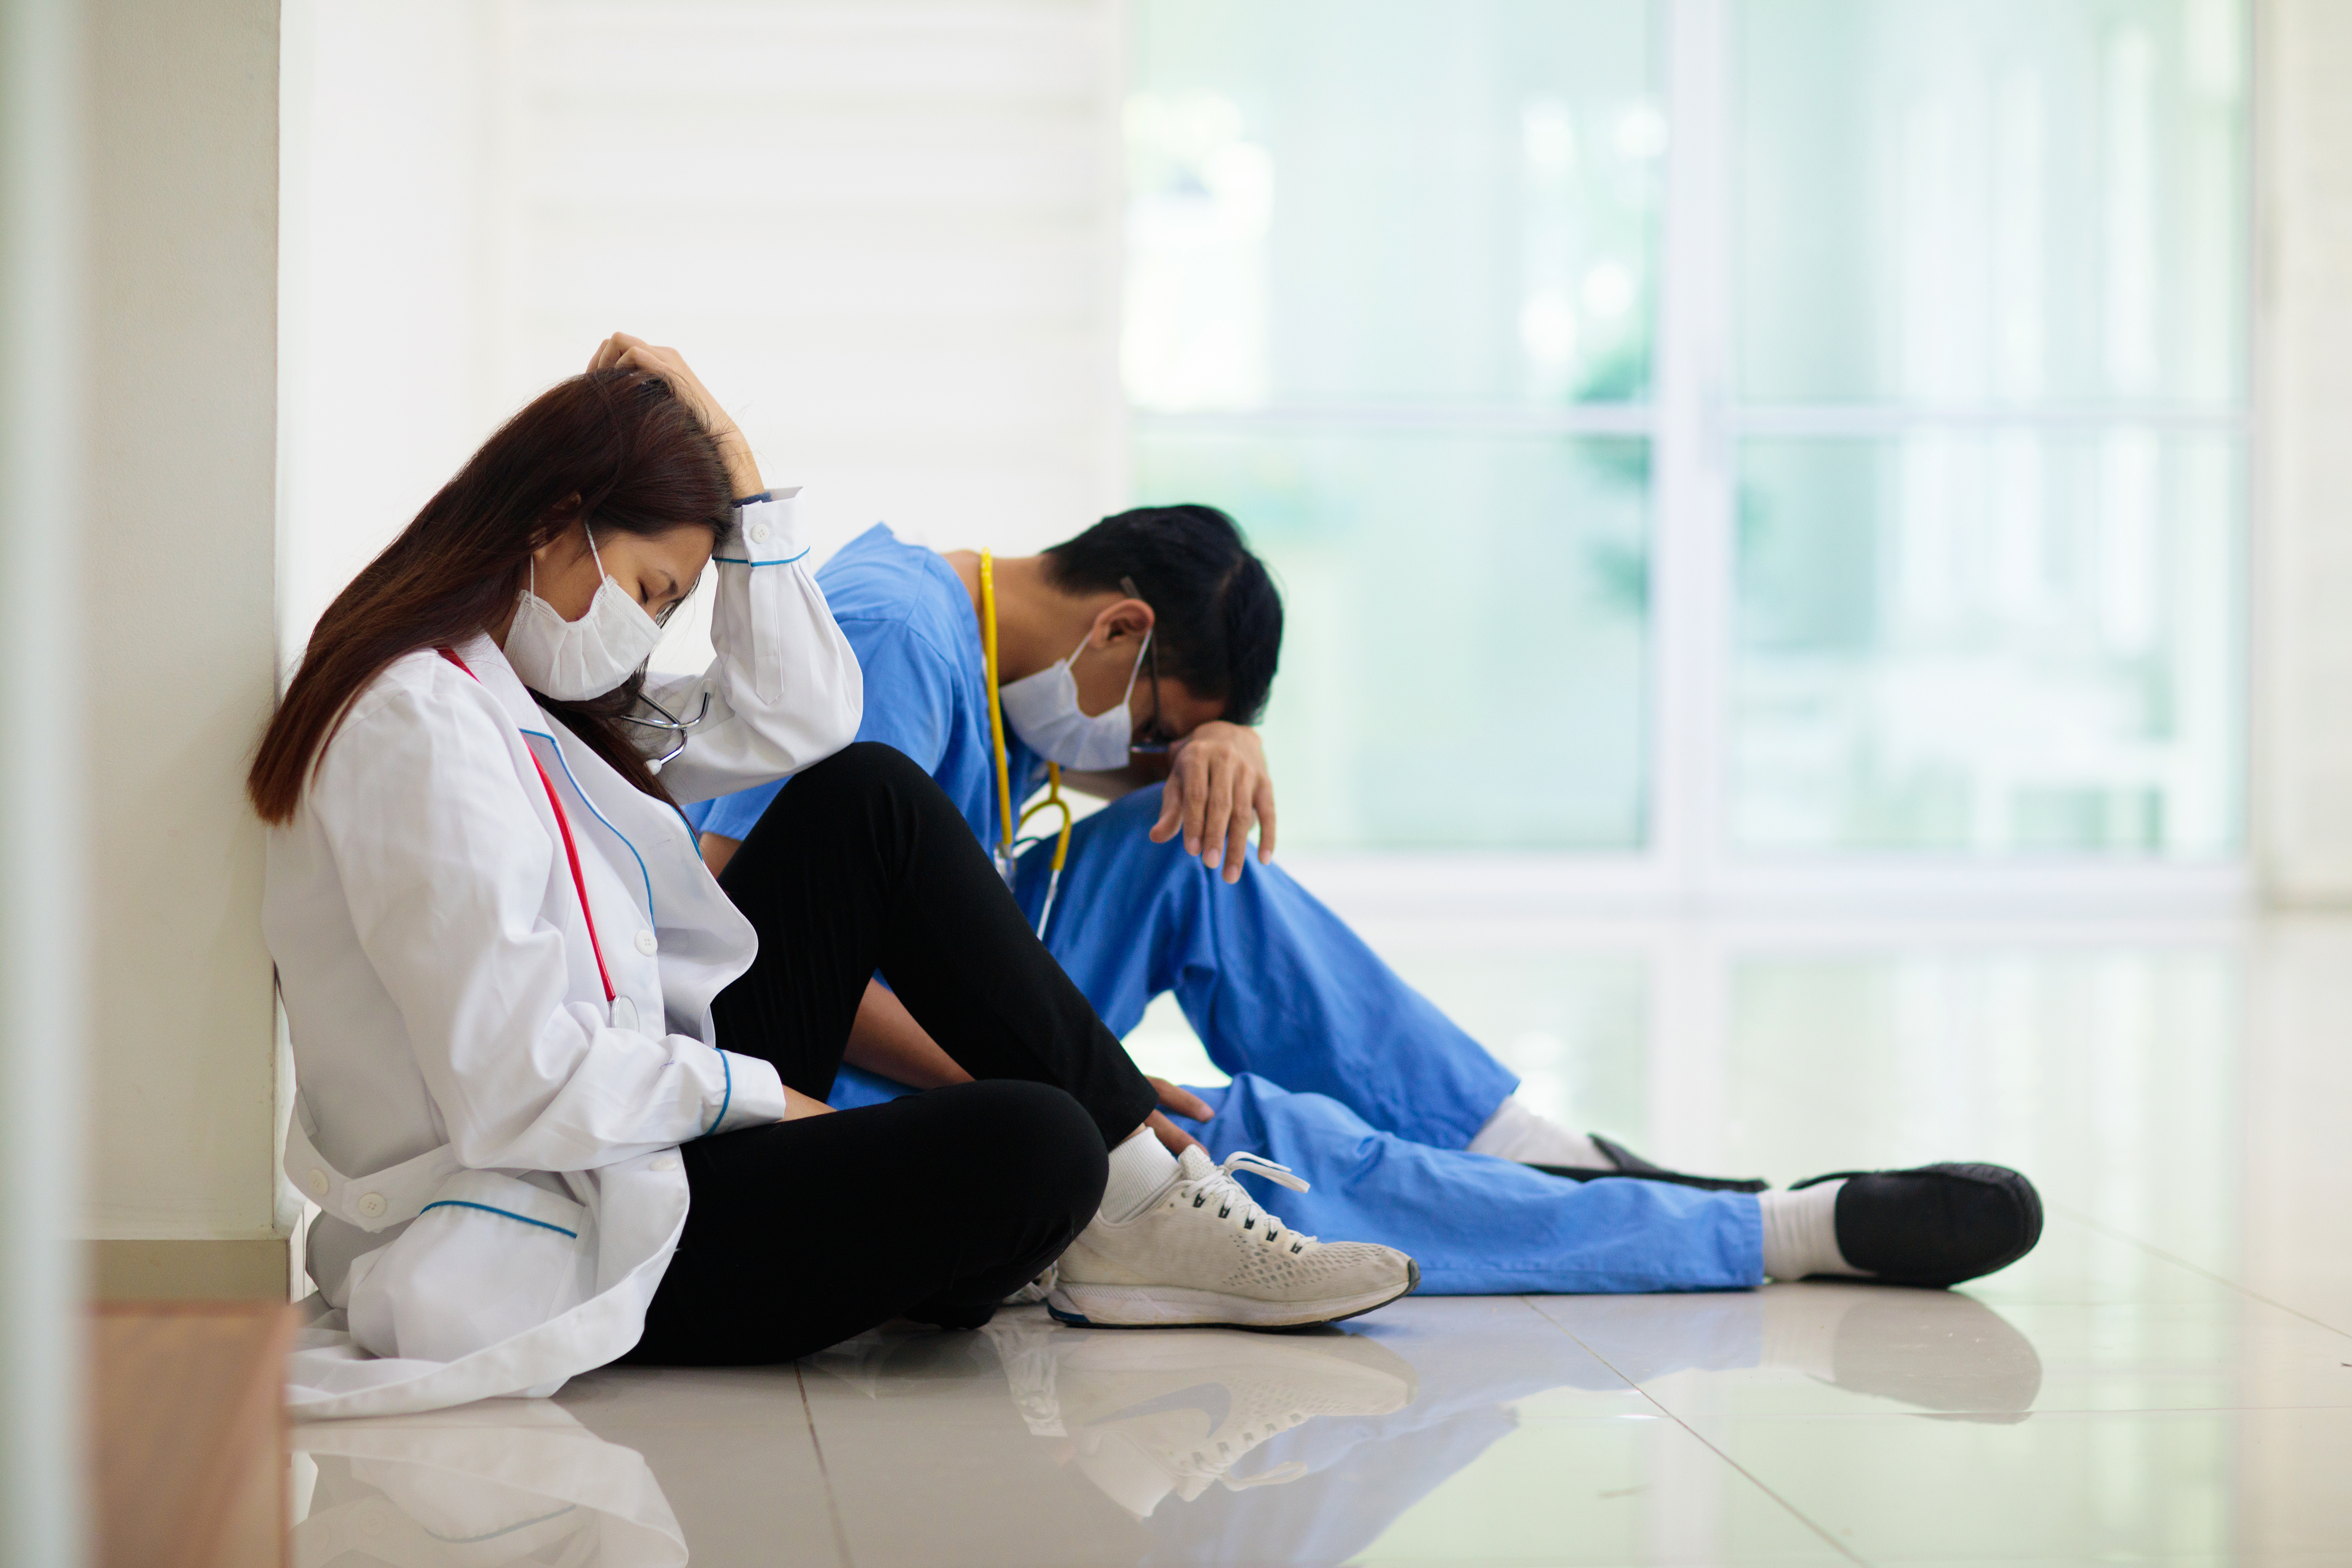 Los médicos son uno de los principales afectados por la pandemia (Shutterstock)